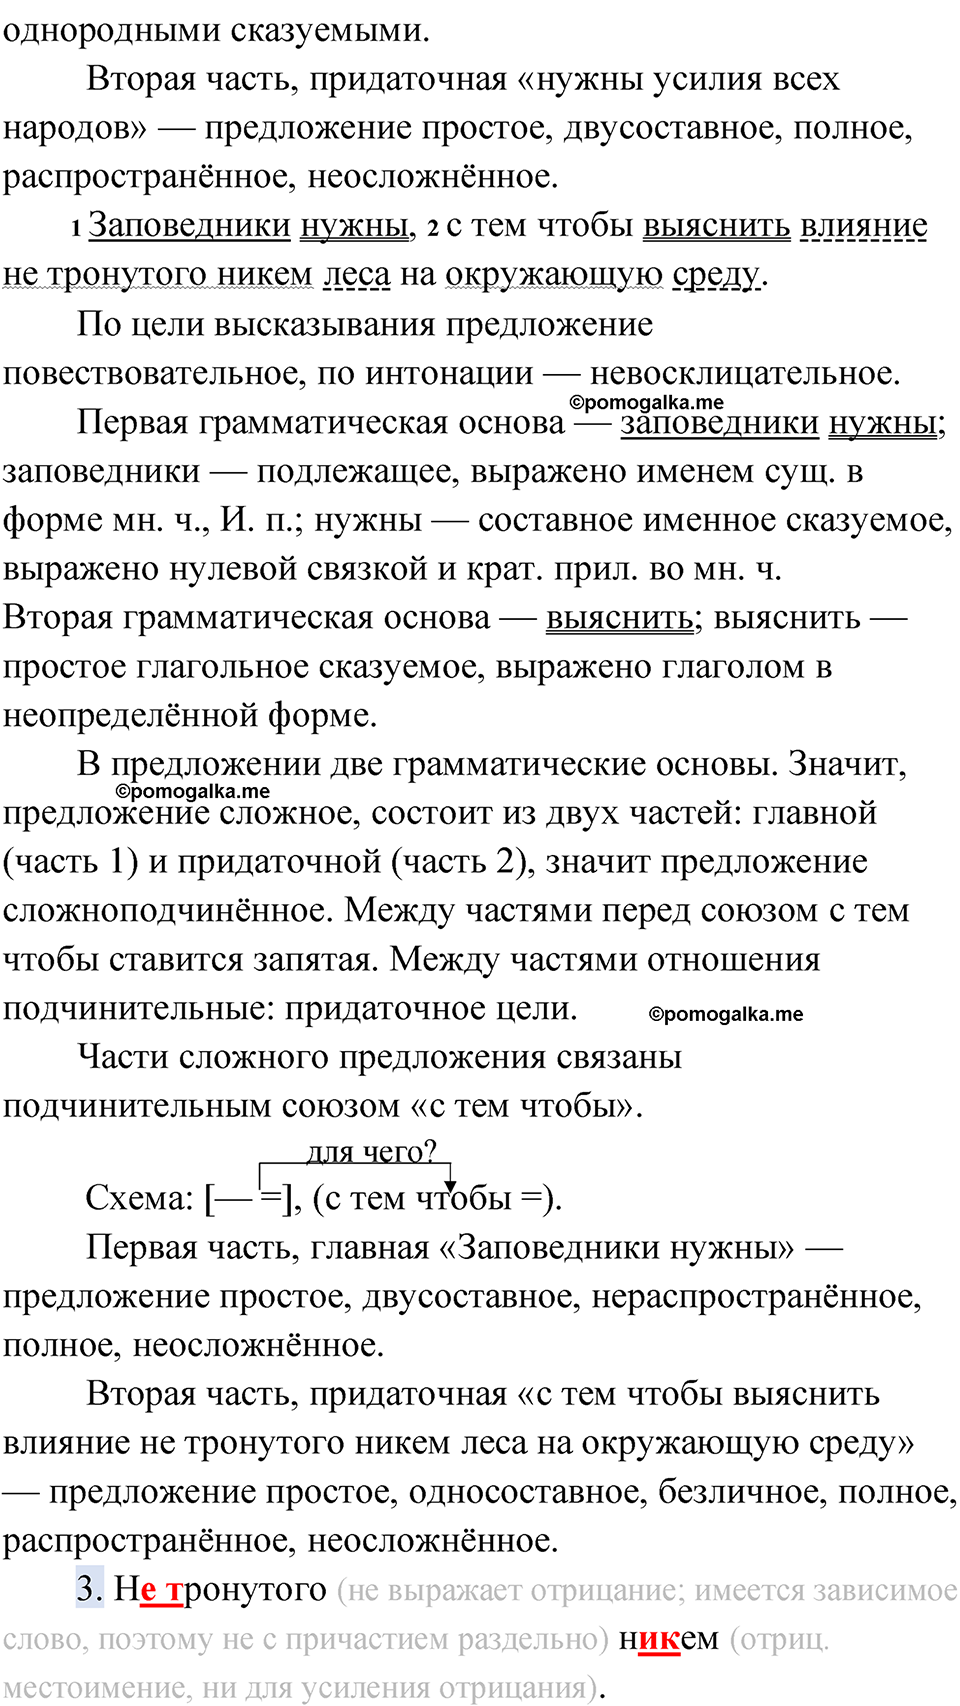 страница 247 упражнение 220 русский язык 9 класс Быстрова 1 часть 2022 год